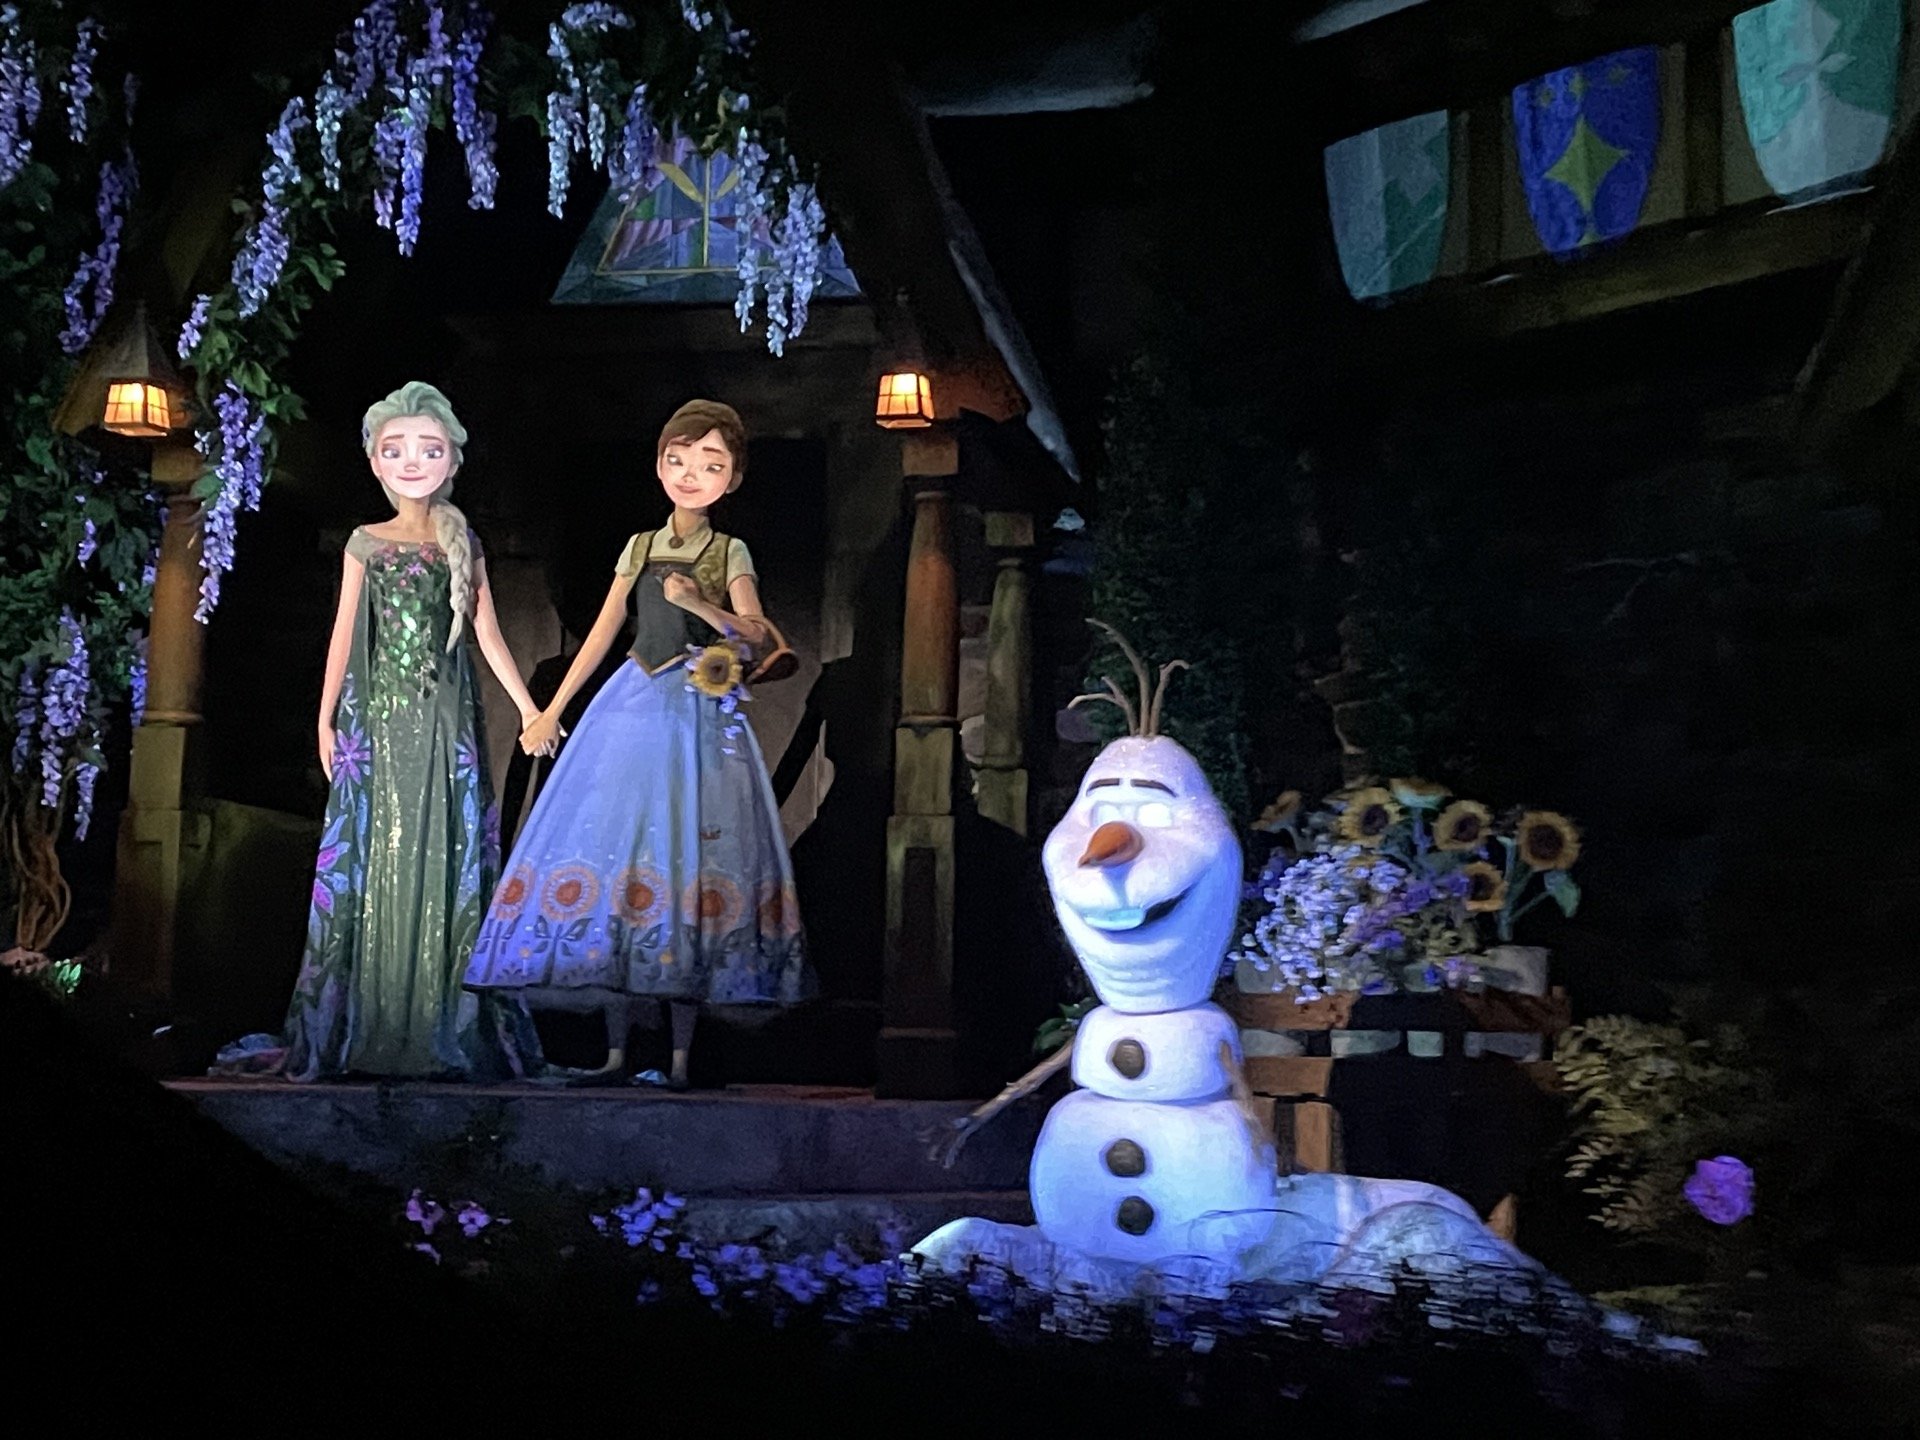 WATER SPIRIT WAVE RIDE ATTRACTION! Frozen 2 Event Disney Magic